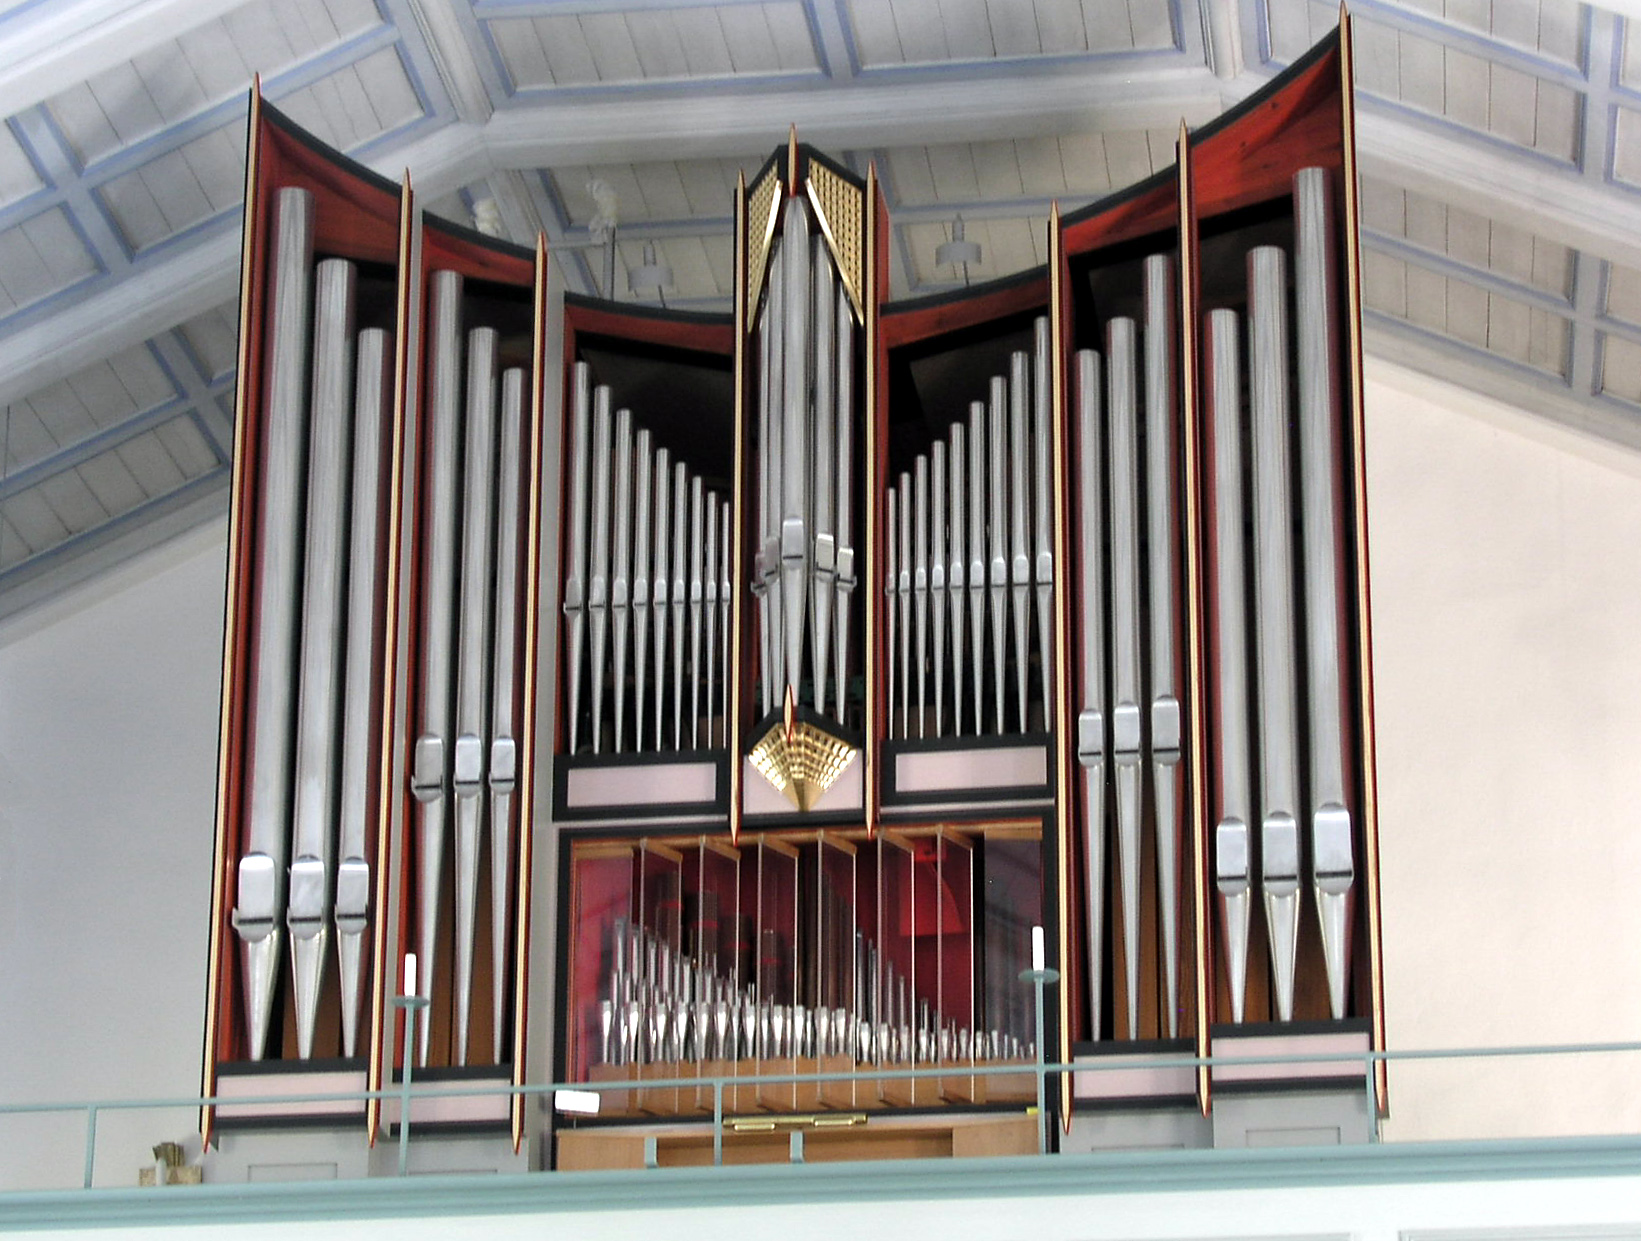 Music Pipe Organ Wallpaper